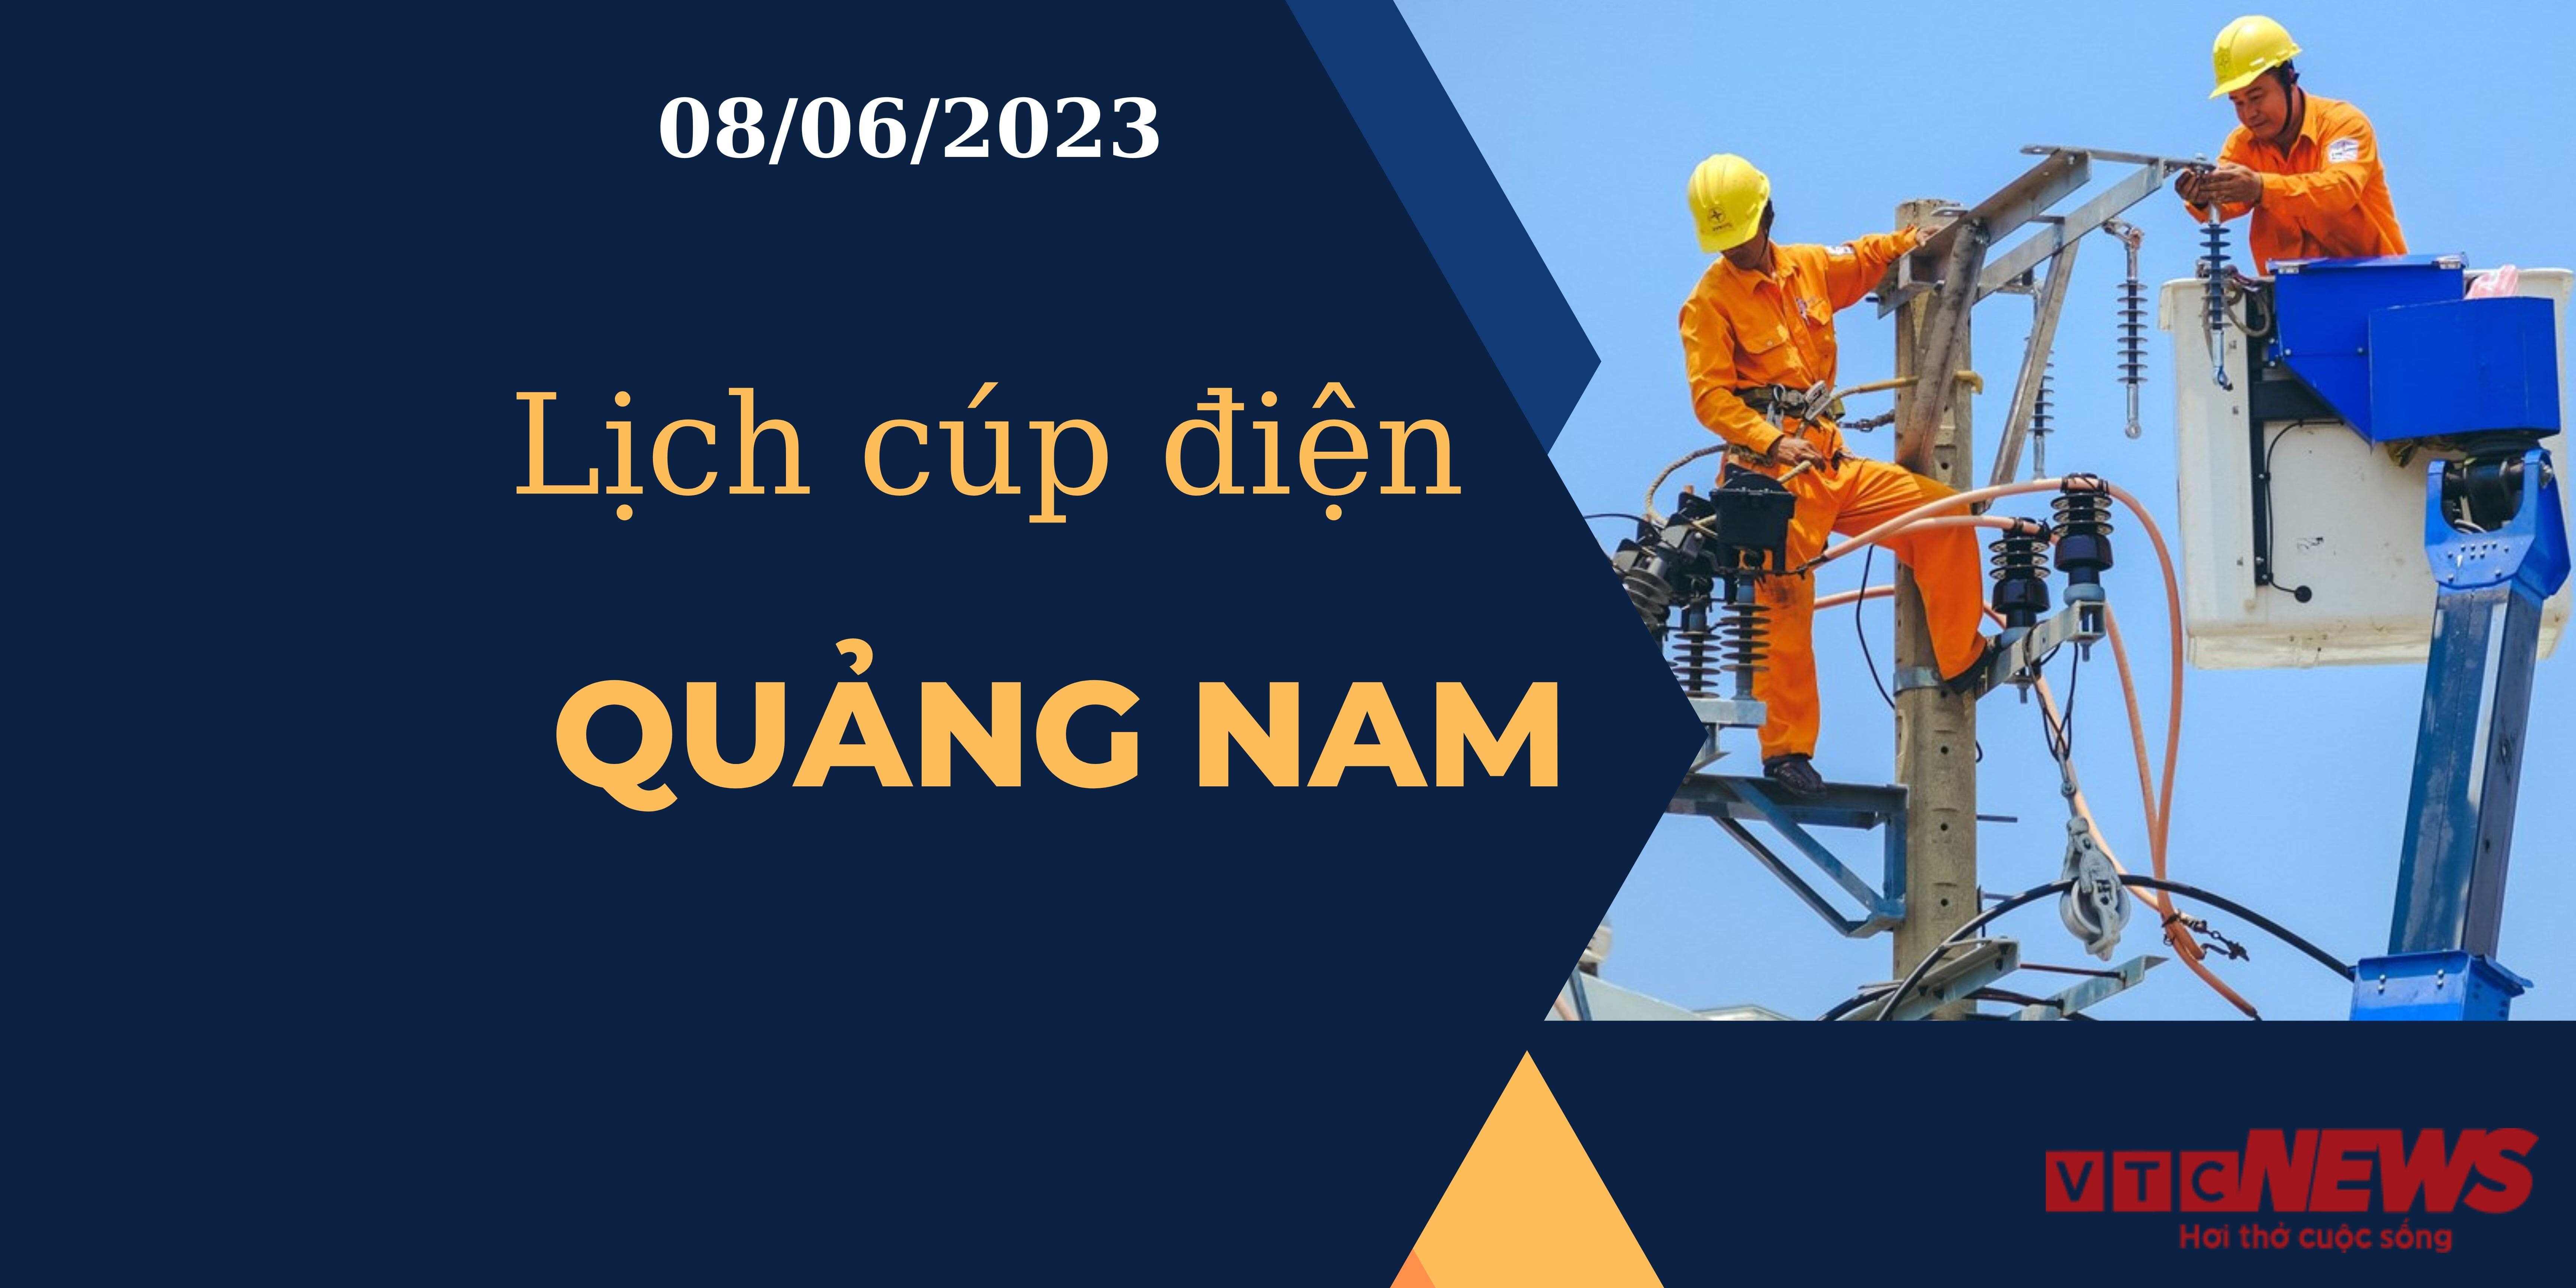 Lịch cúp điện hôm nay tại Quảng Nam ngày 08/06/2023 - 1